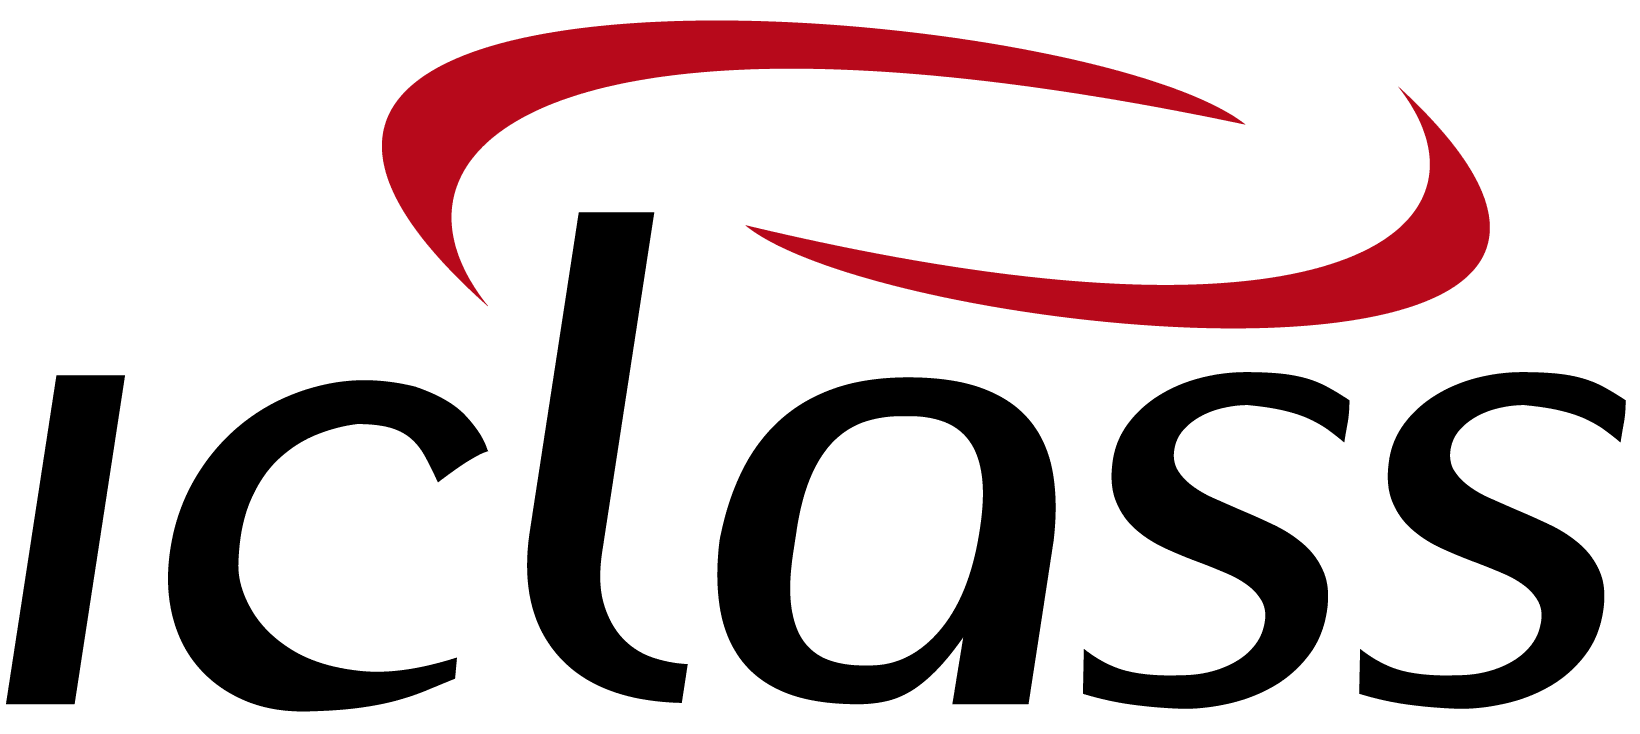 logo IClass Software de Ordem de Serviço Online Software para Fabricantes de Maquinas | IClass